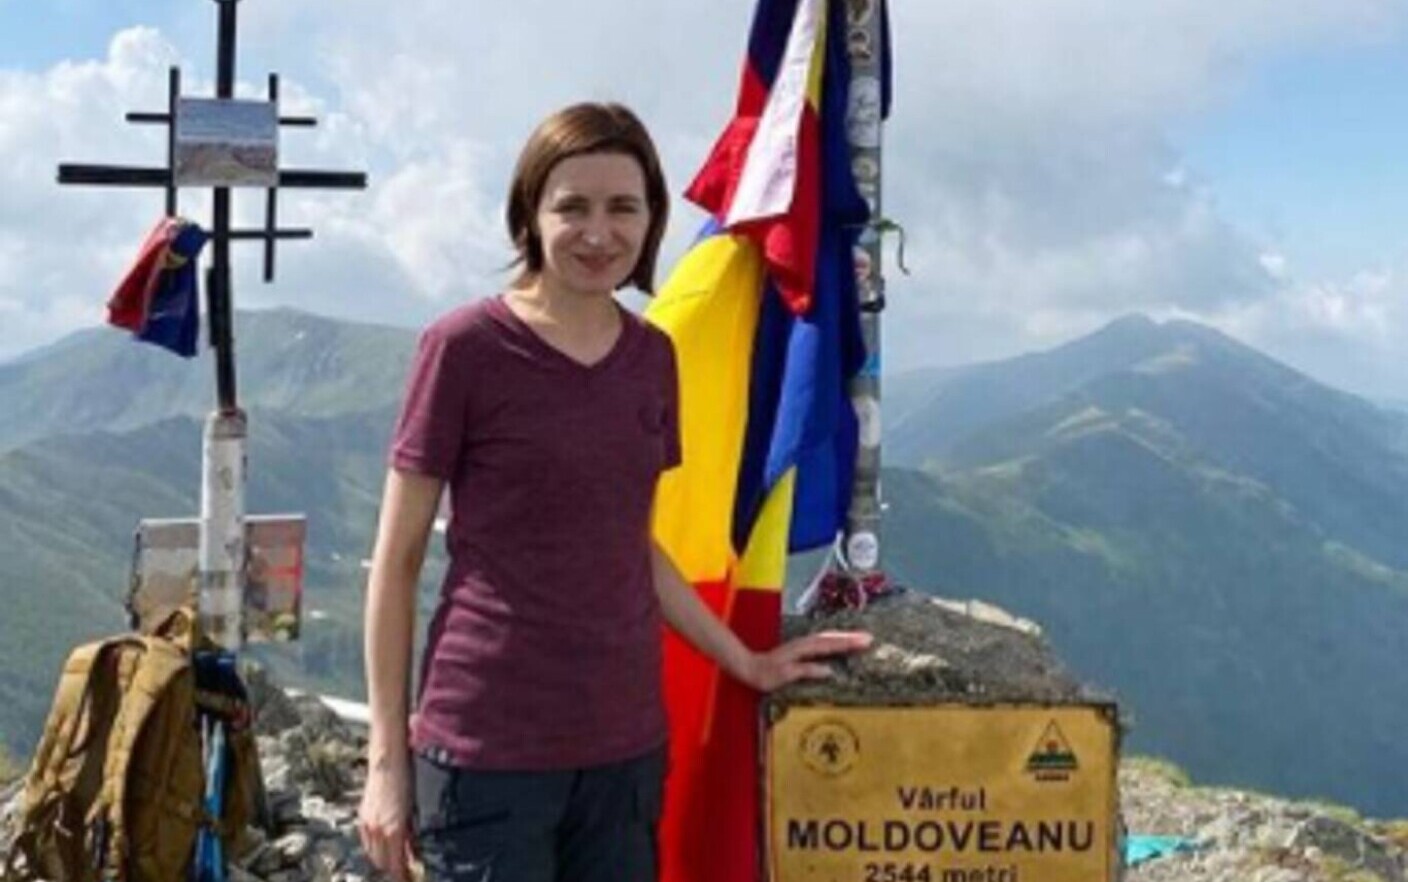 Președintele R. Moldova, Maia Sandu, a urcat pe Vârful Moldoveanu: ”Îmi  place mișcarea în aer liber, mai ales la munte” - Stirileprotv.ro